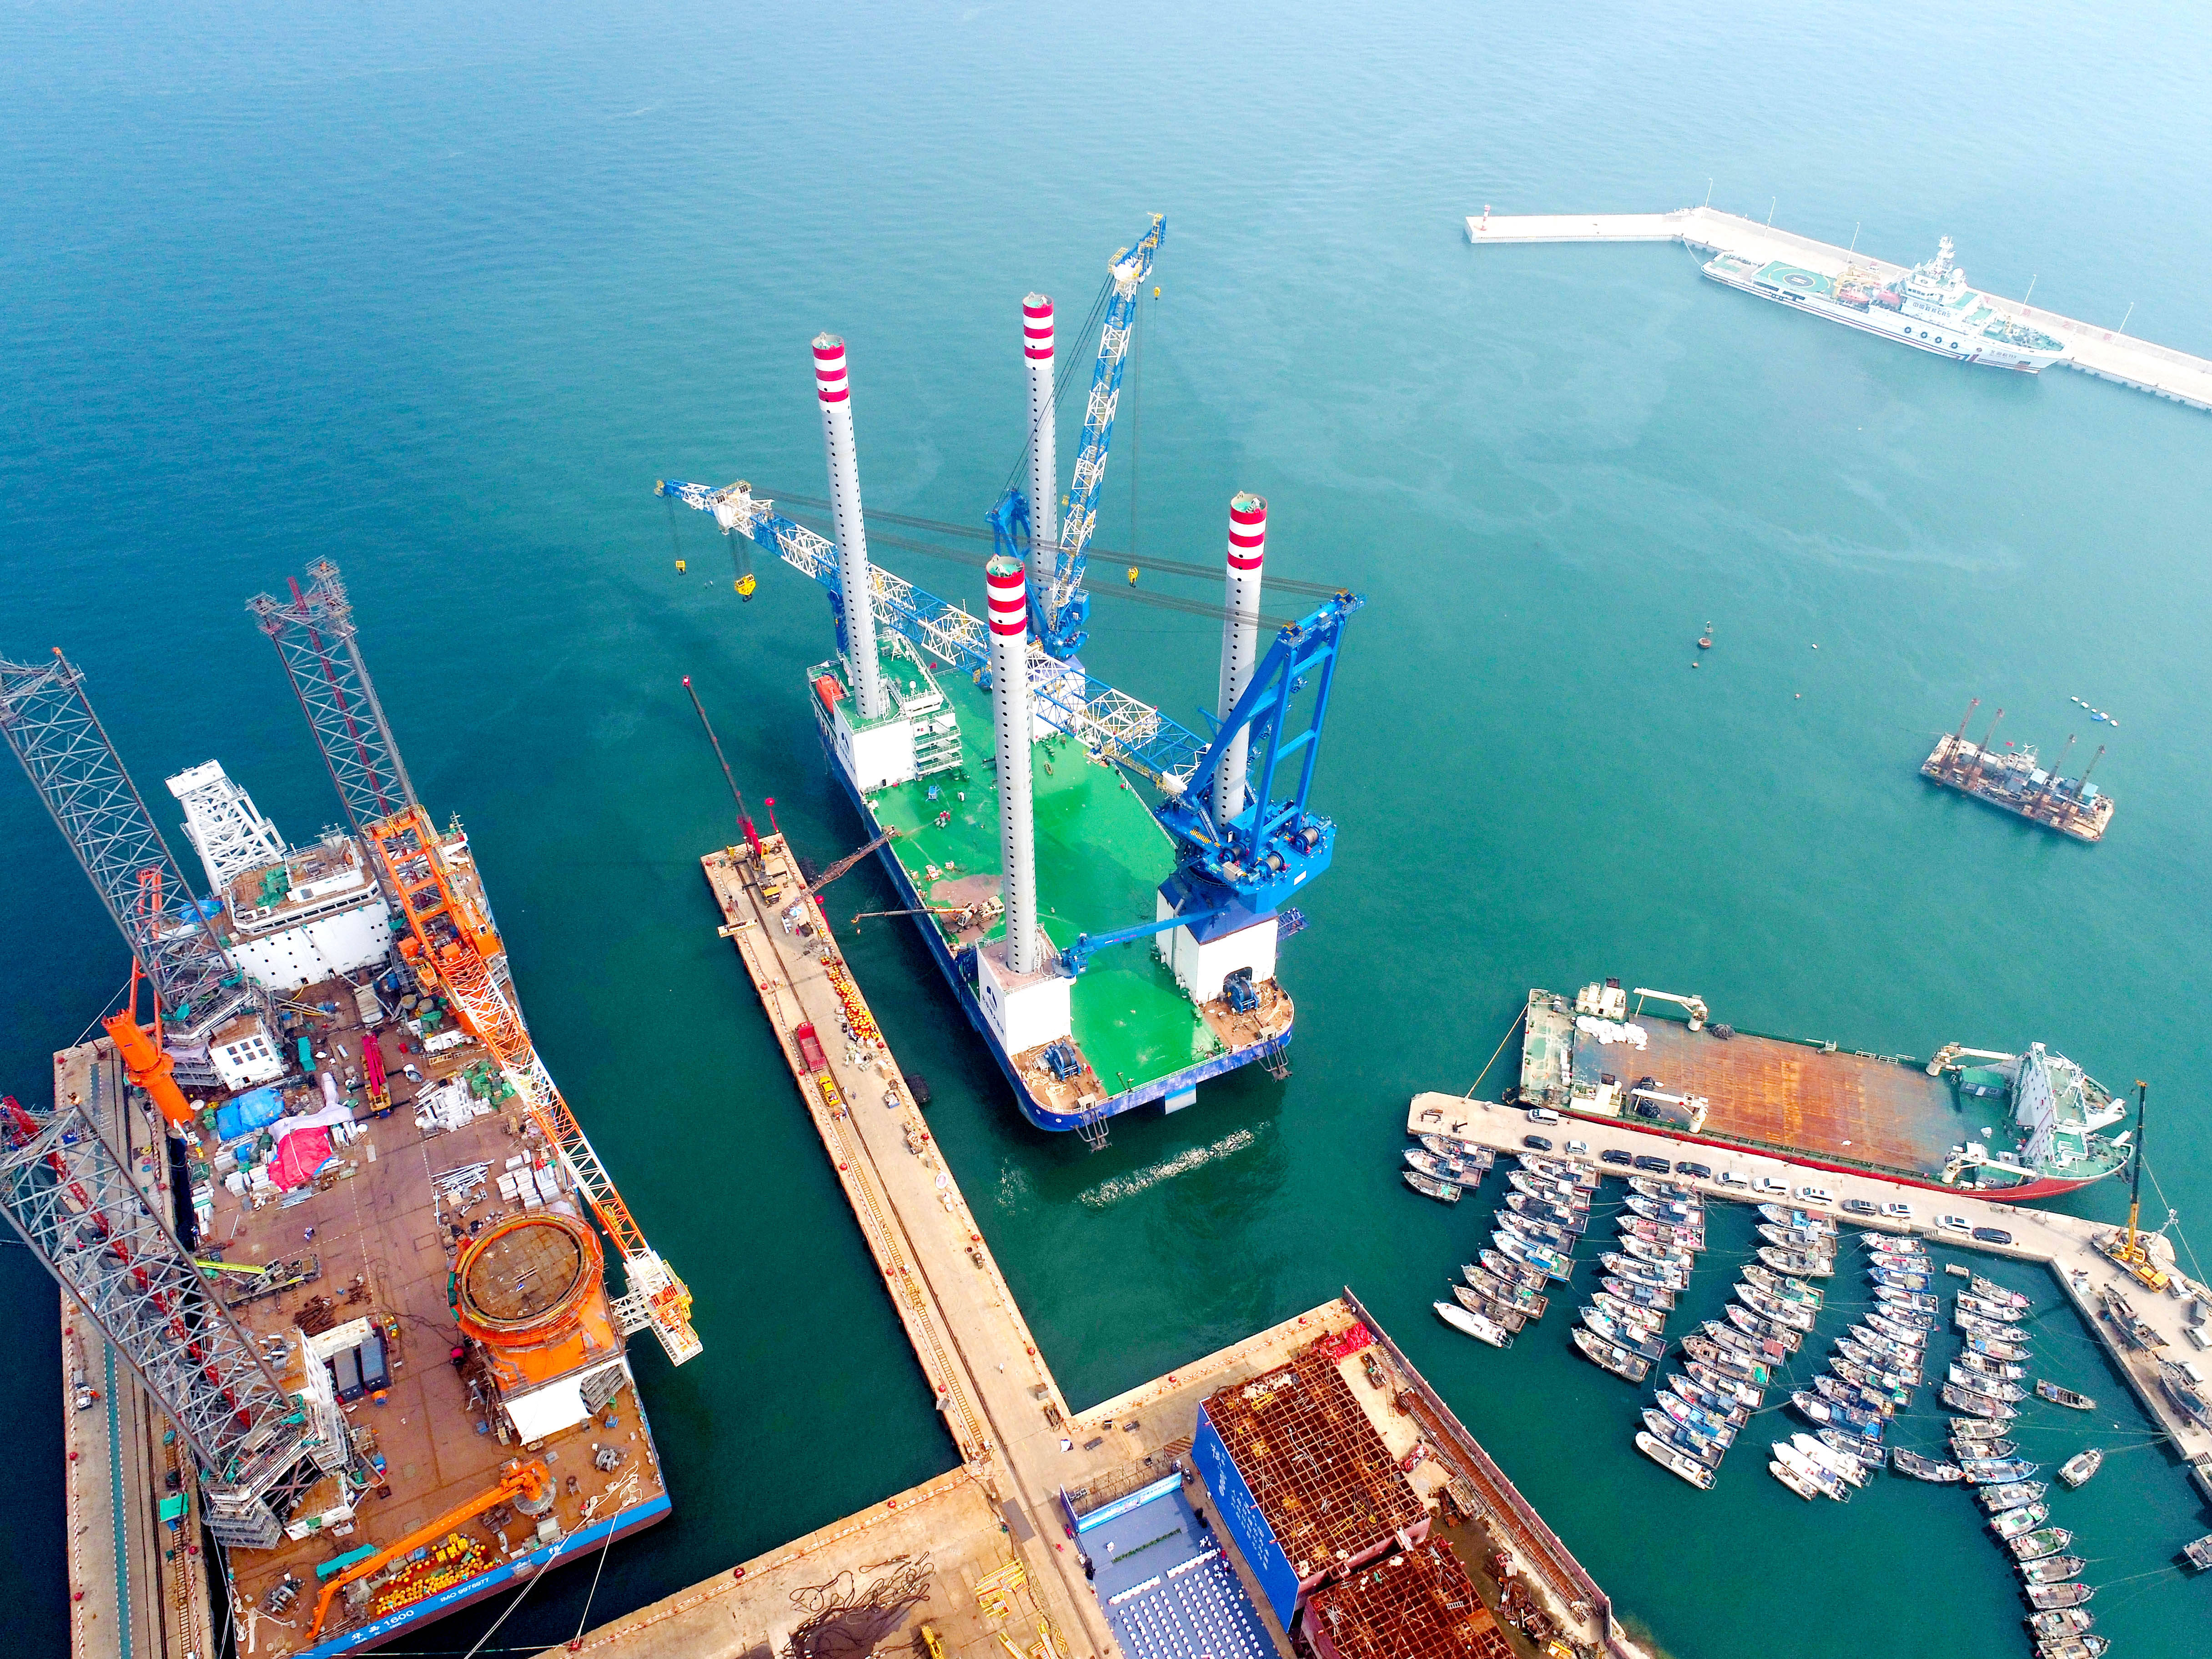 1200吨自升式海上风电安装平台在青岛交付